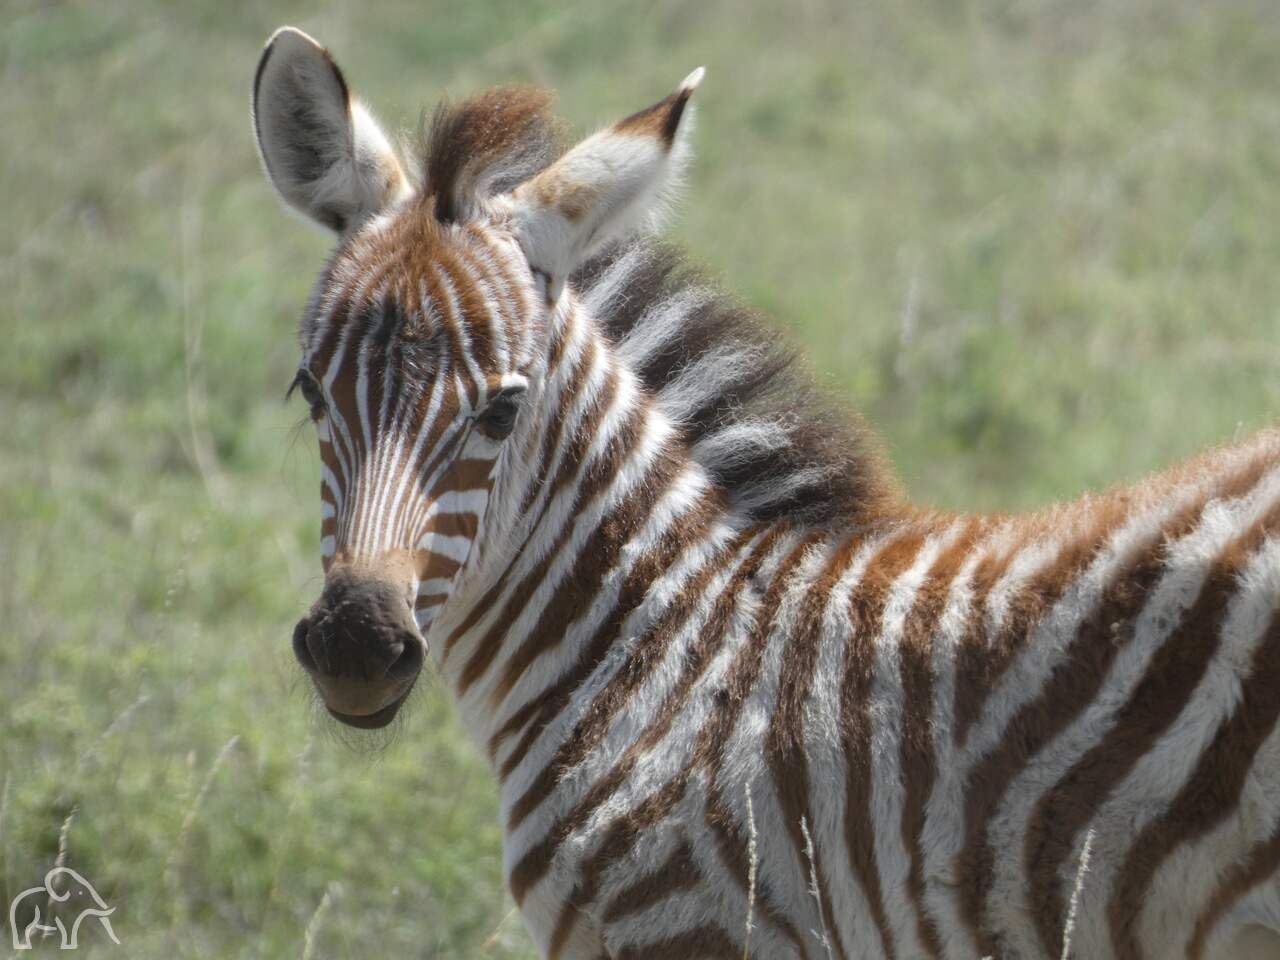 3 weken oude zebra die je aankijkt ze is nog steeds een beetje pluizig